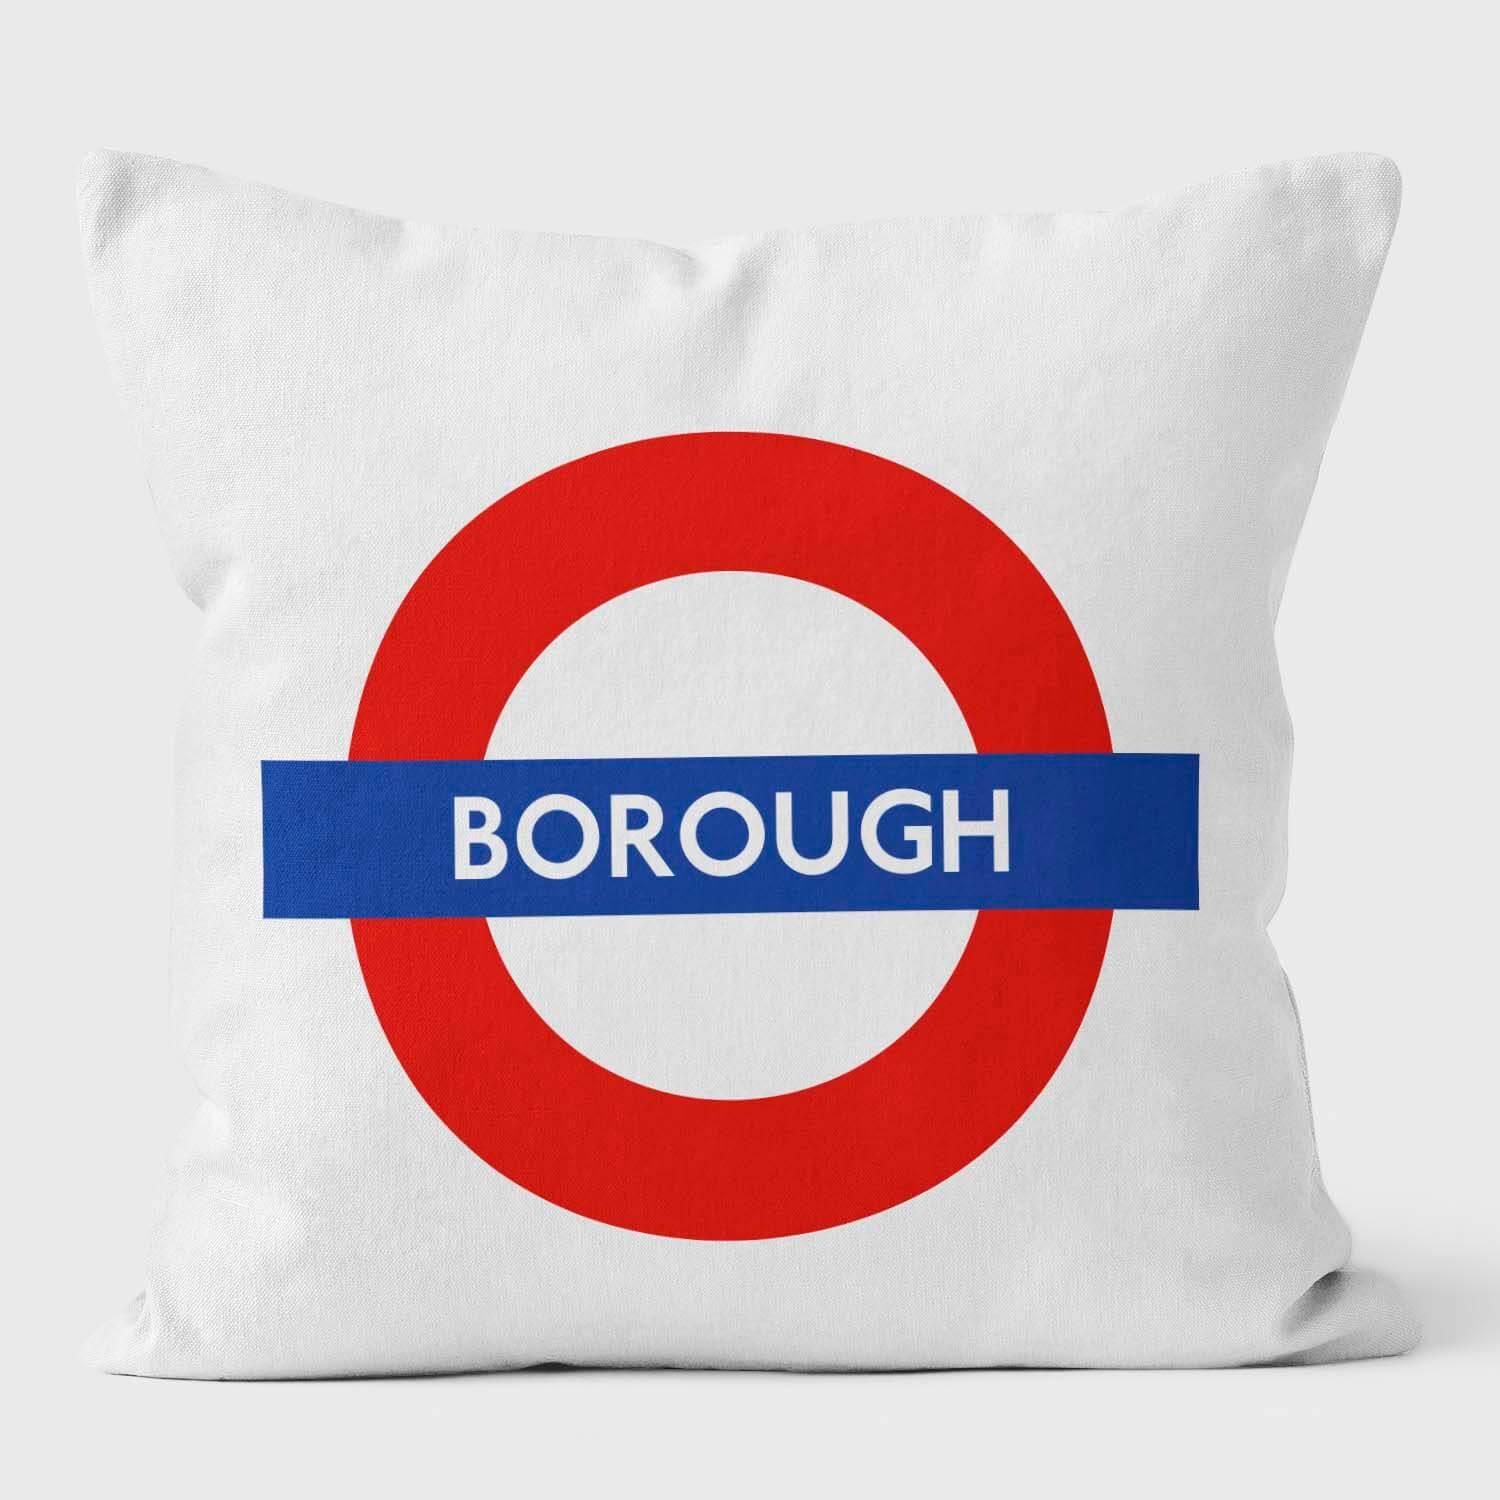 Borough London Underground Tube Station Roundel Cushion - Handmade Cushions UK - WeLoveCushions